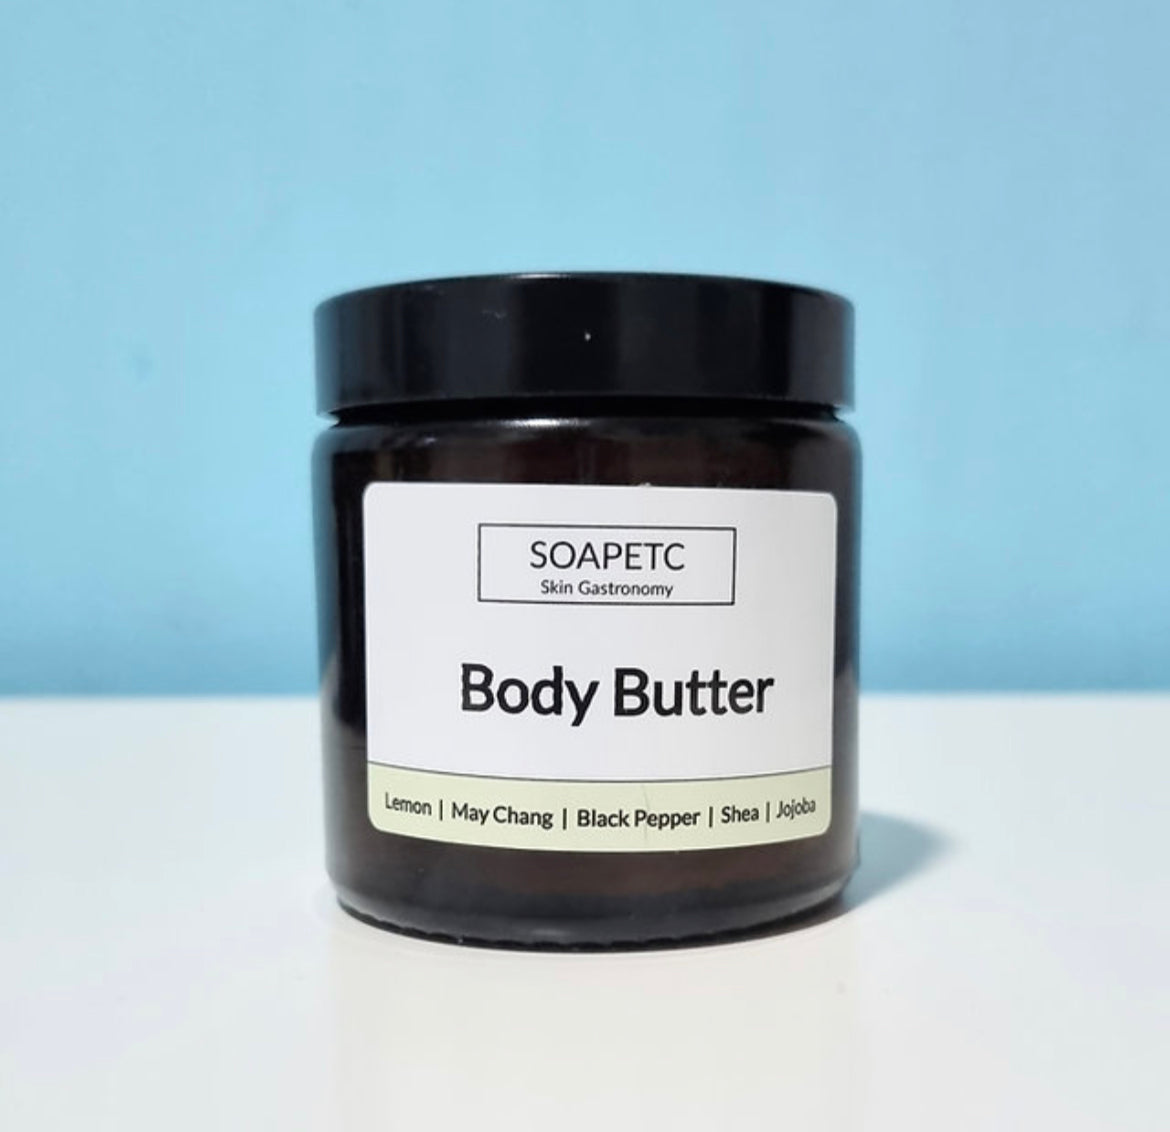 Body Butter - May Chang, Black Pepper, Lemon